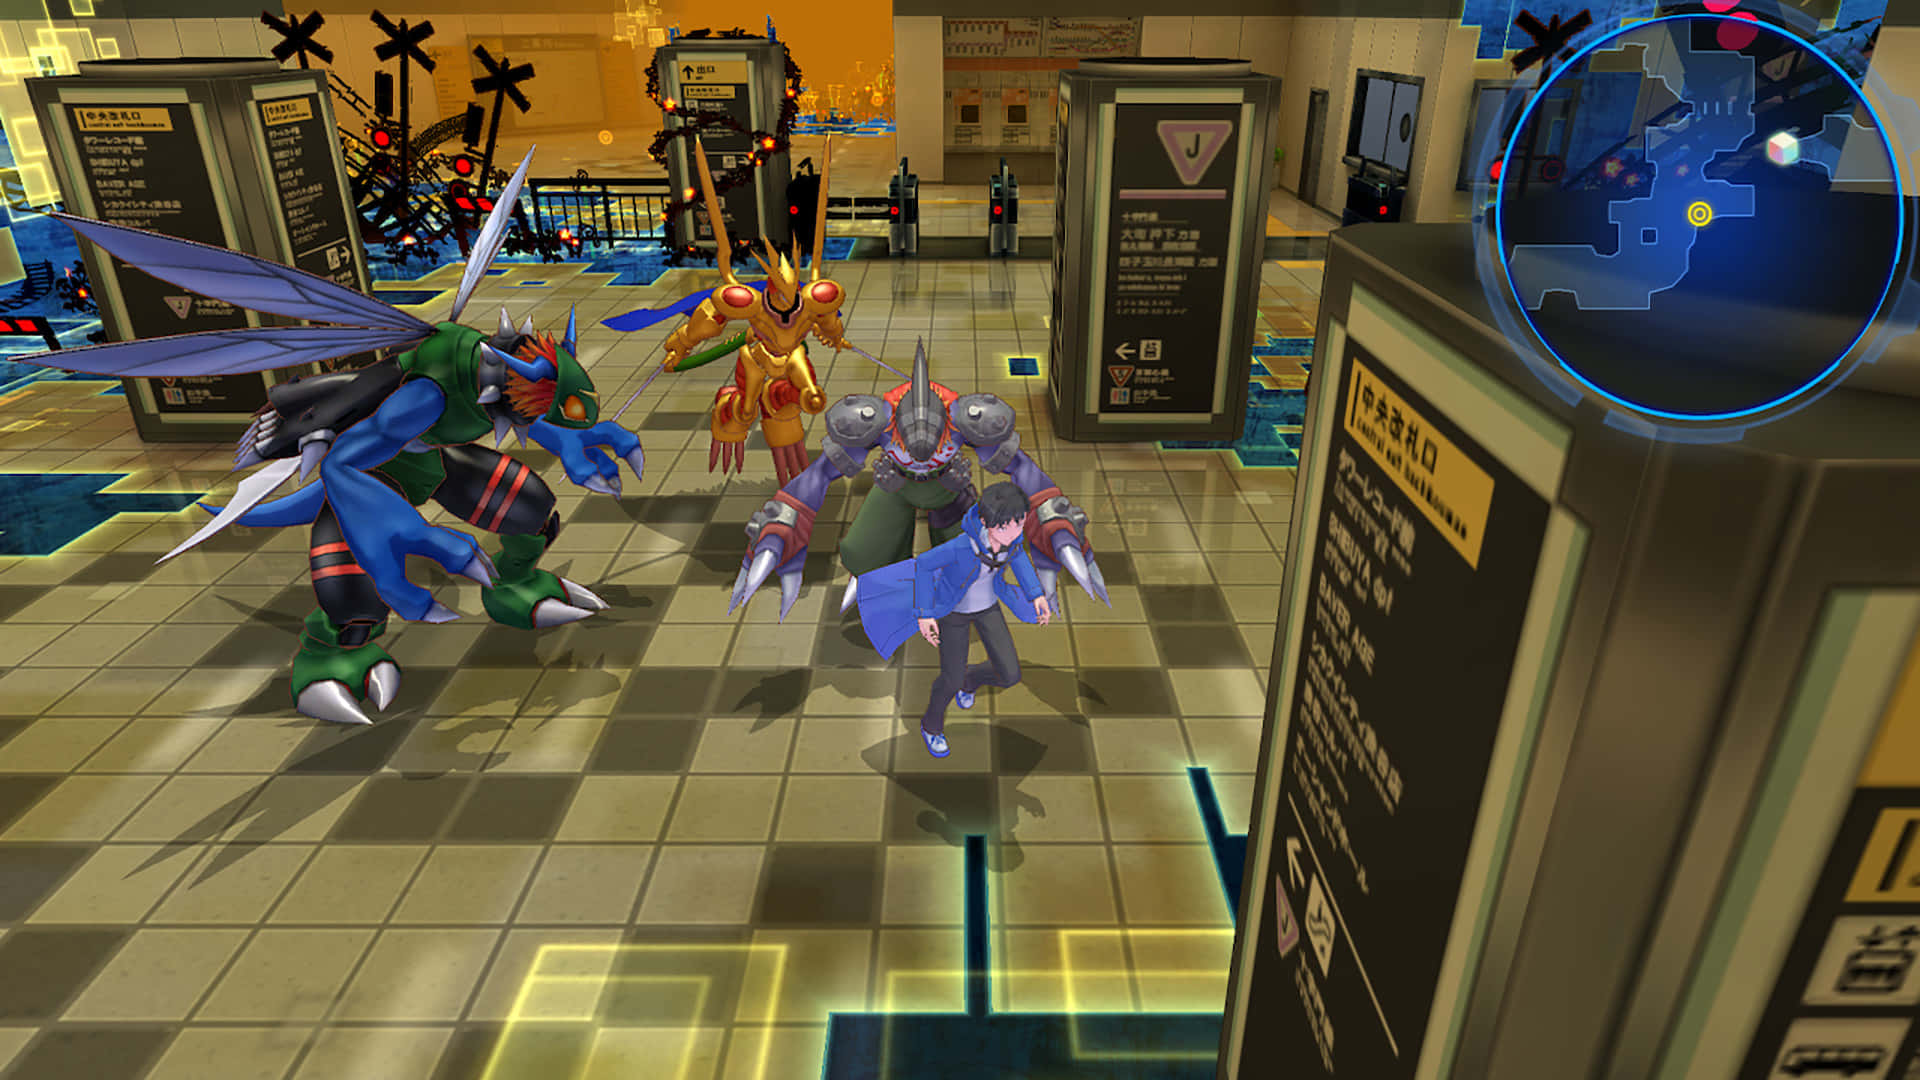 Udforsk den digitale verden og lås magien i Digimon fri!